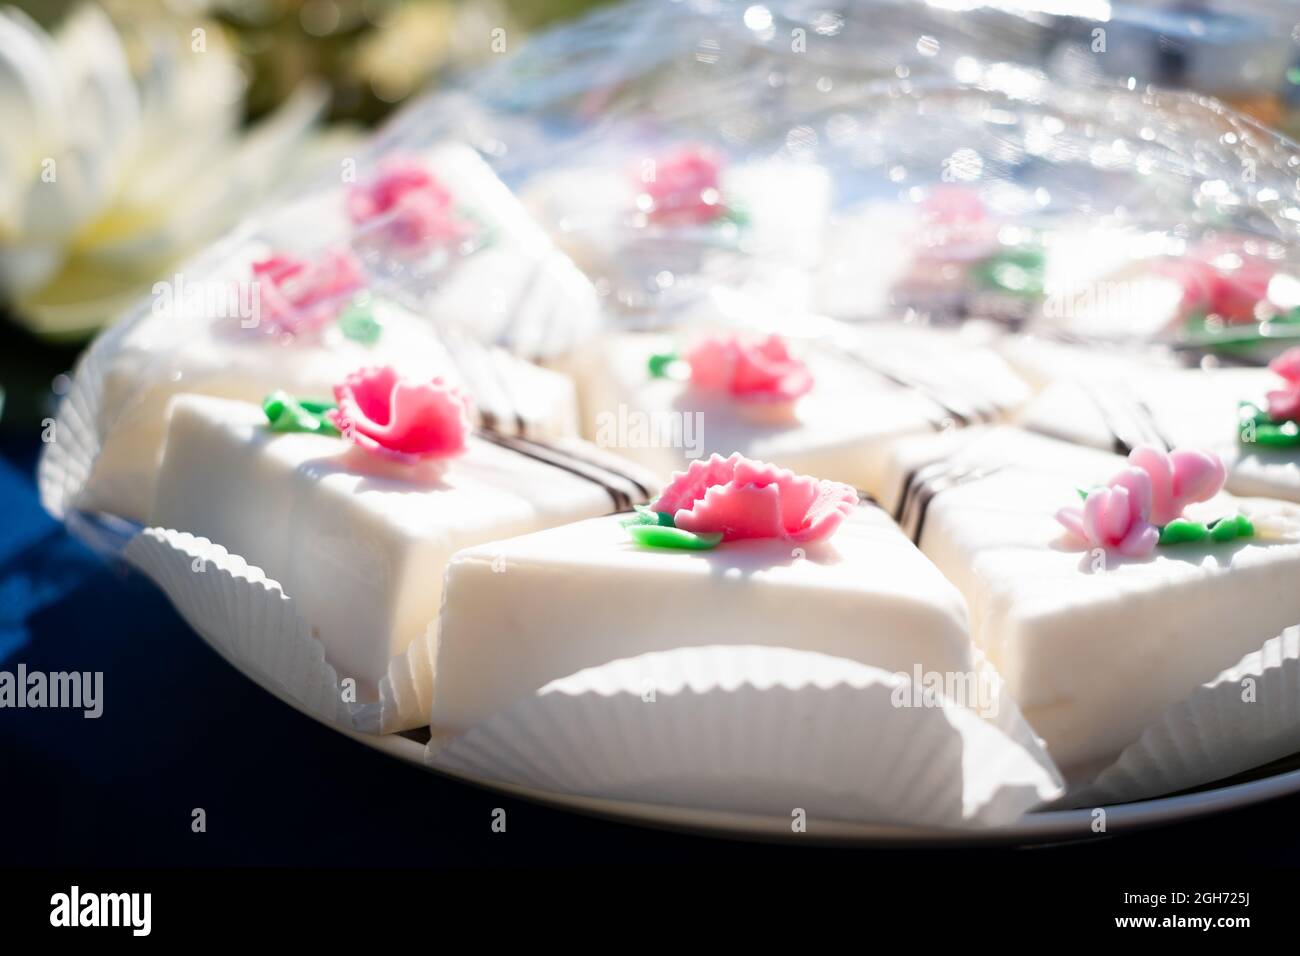 Süße Kuchenscheiben auf einem Teller. Weiße Marzipan-Tarte mit rosa Blumenschmuck. Stockfoto